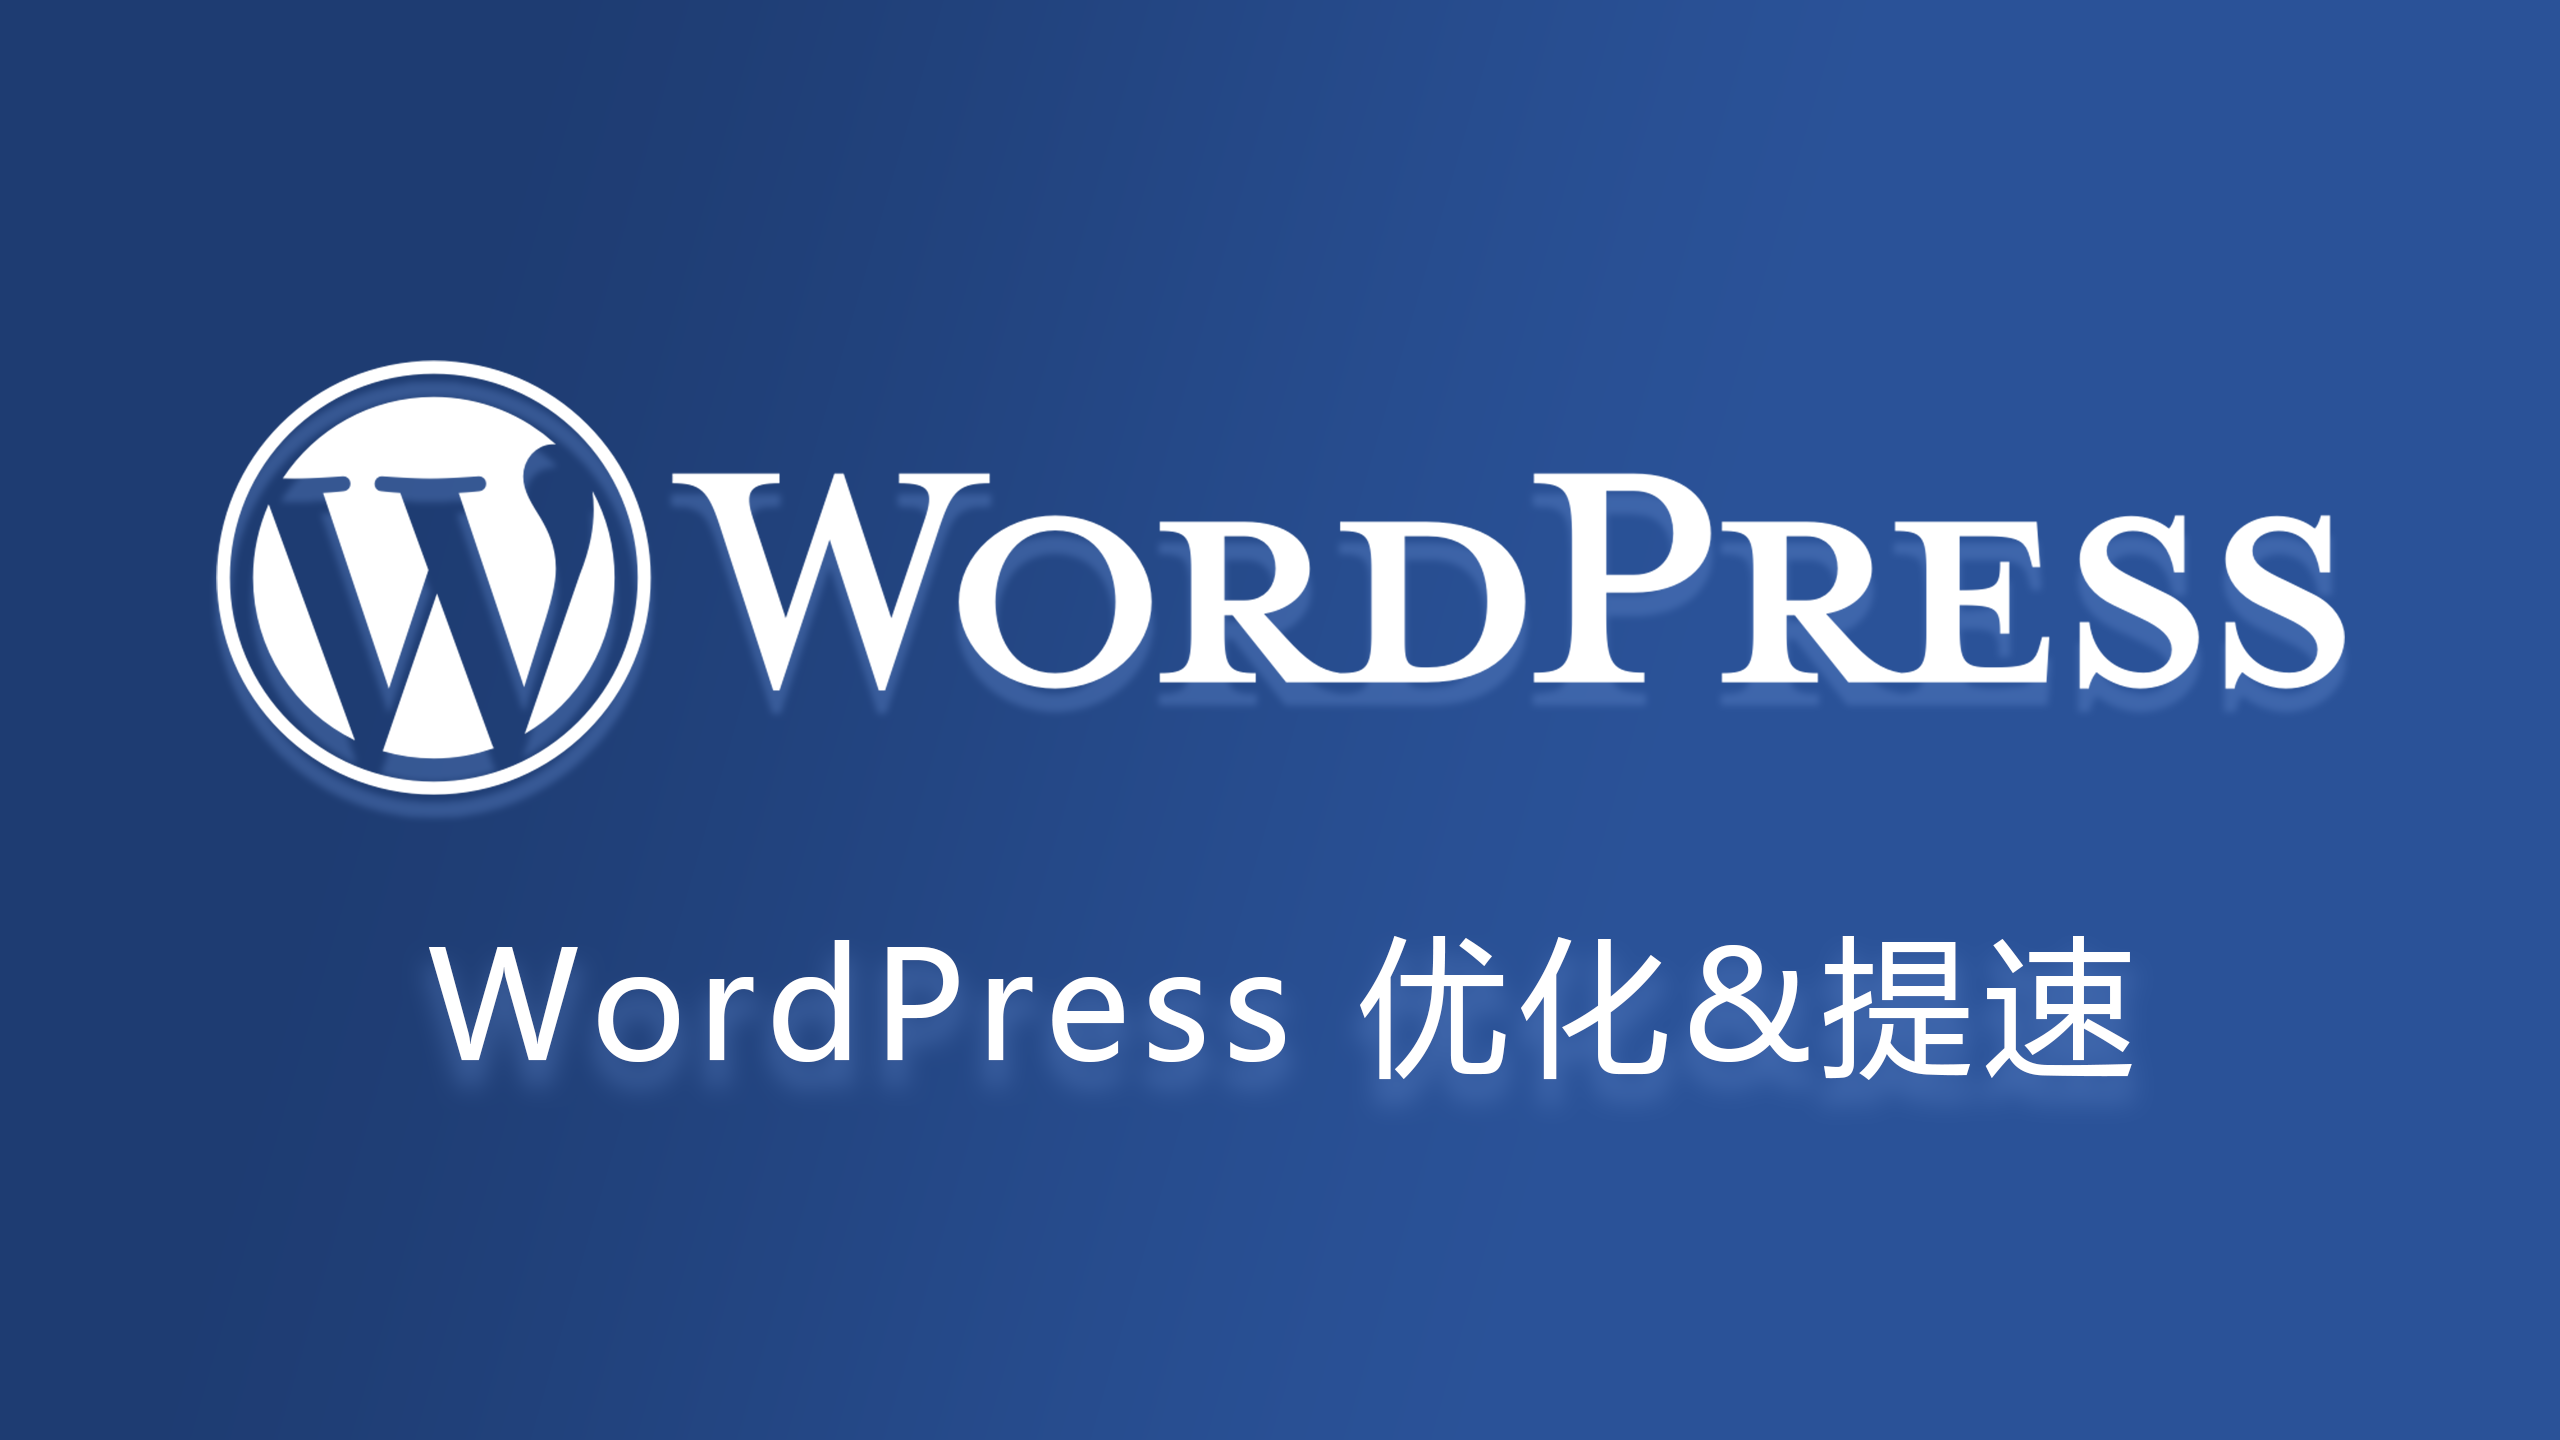 如何有效地提高 WordPress 博客的访问速度